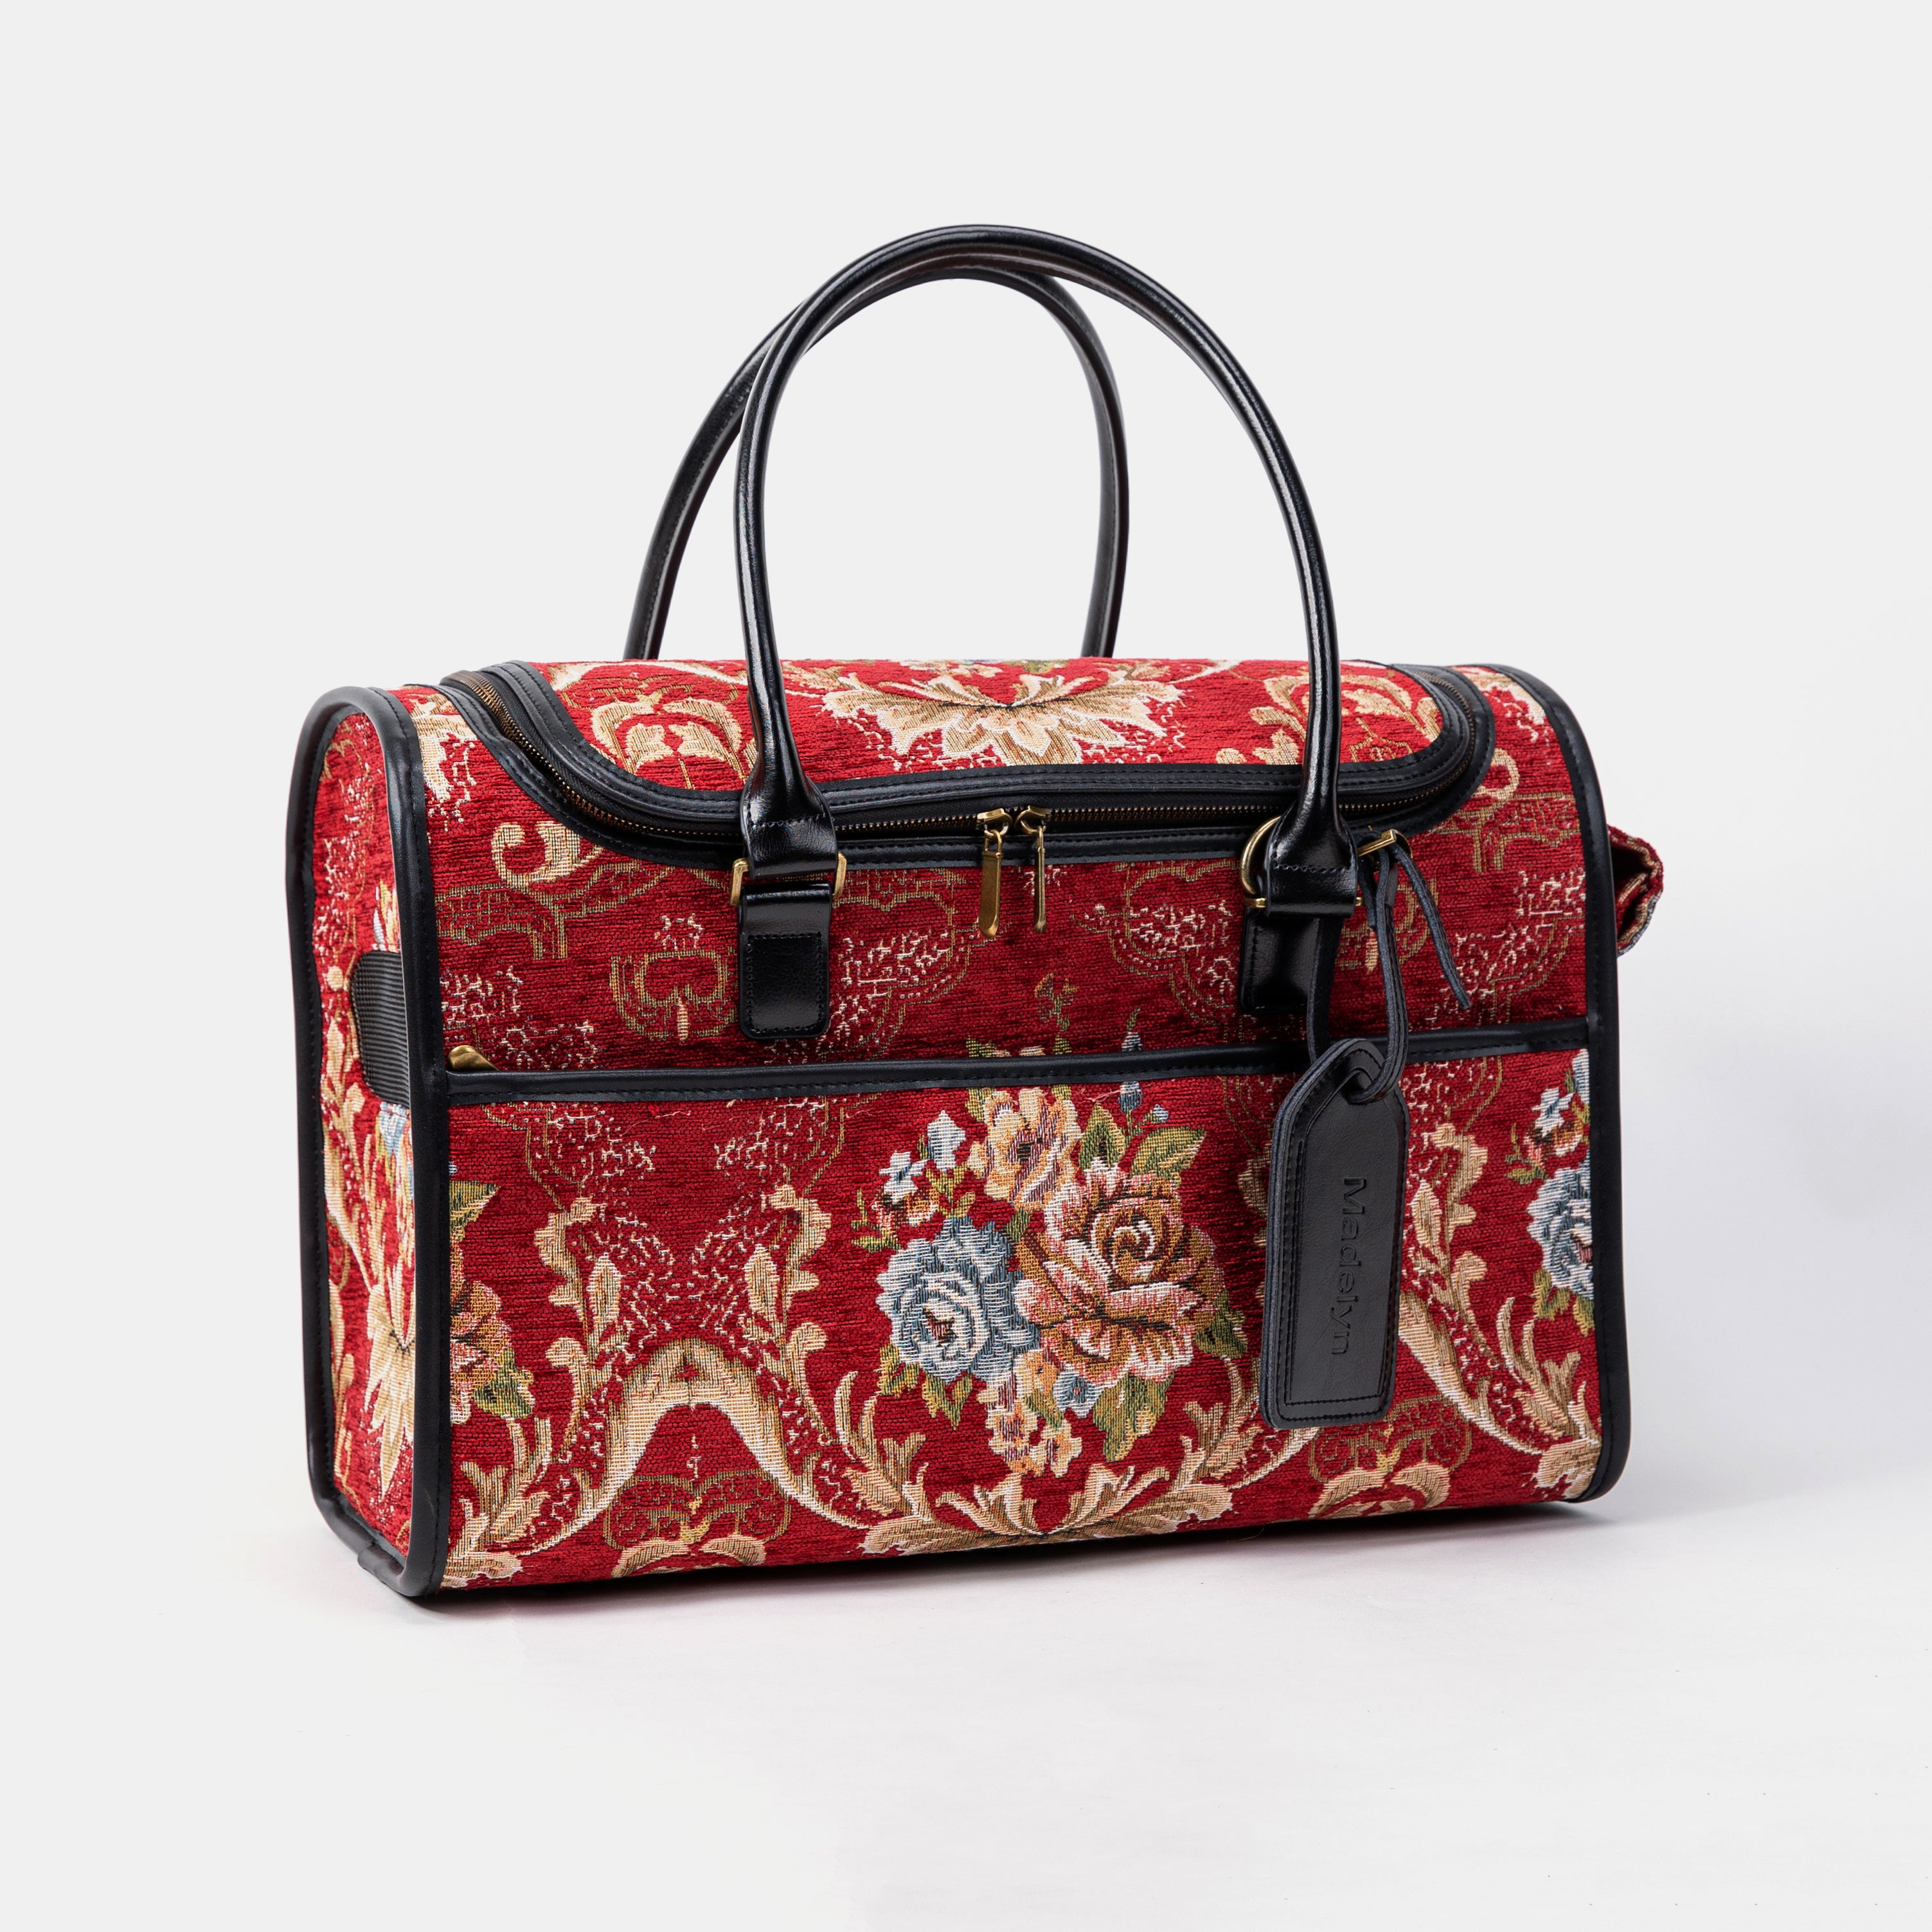 Travel Dog Carrier Bag Floral Red Overview